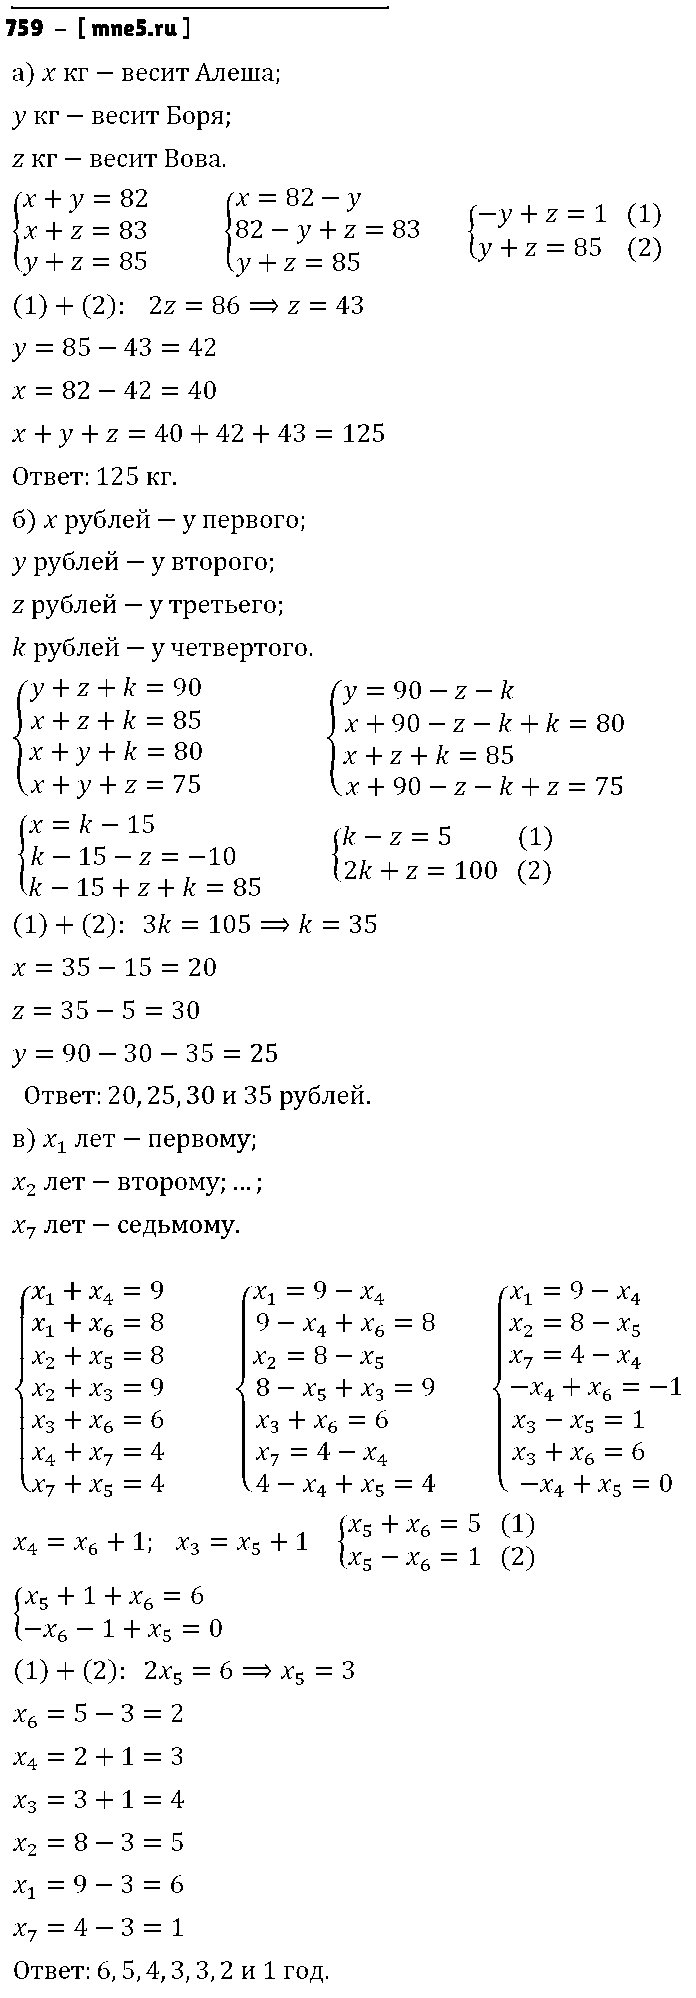 ГДЗ Алгебра 7 класс - 759